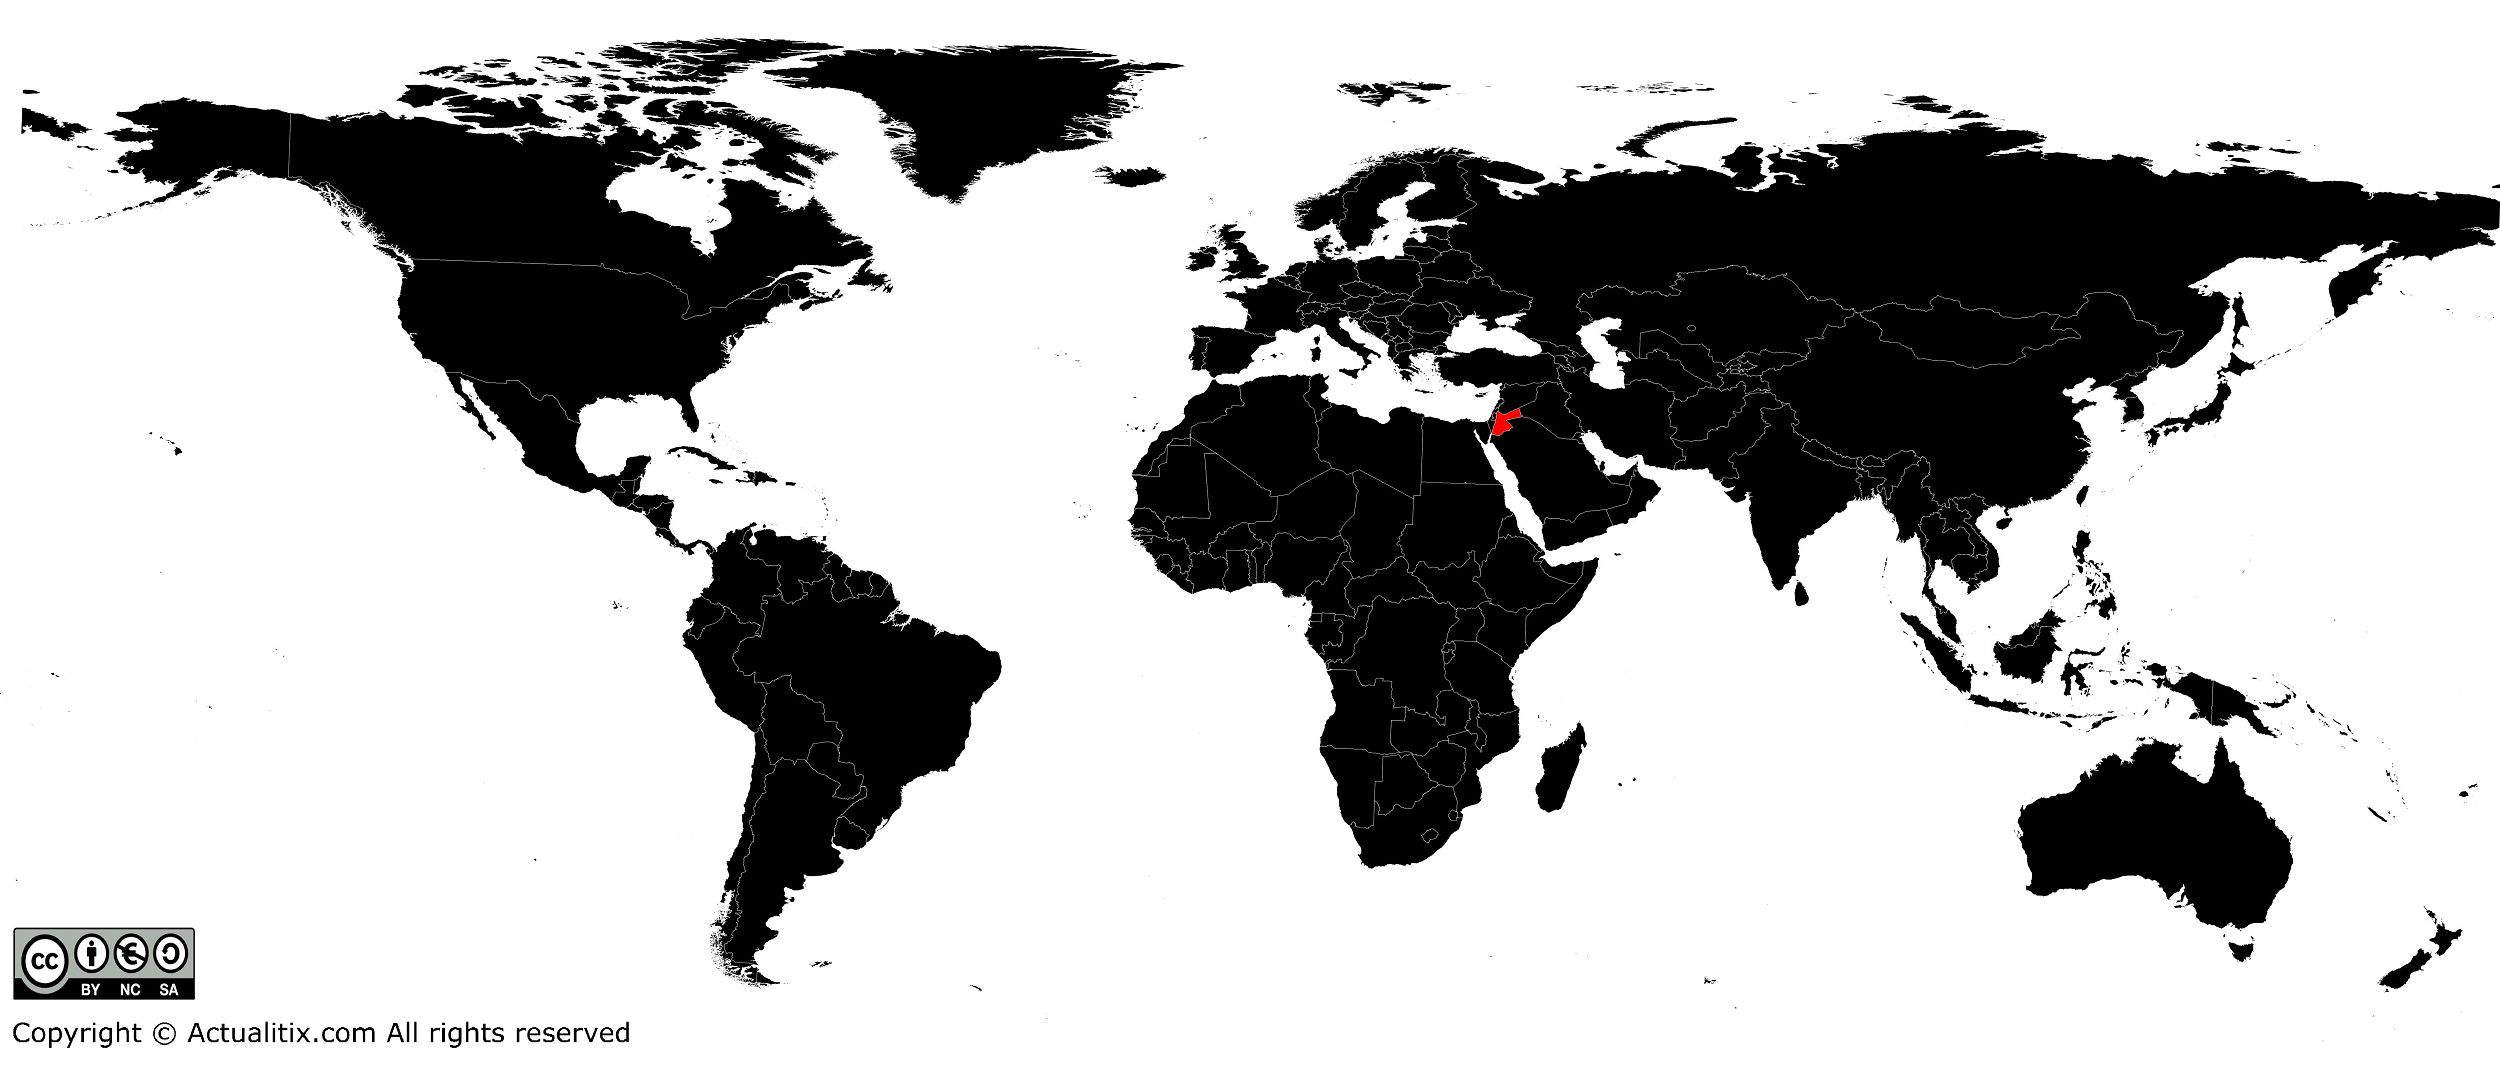 Jordanie sur une carte du monde